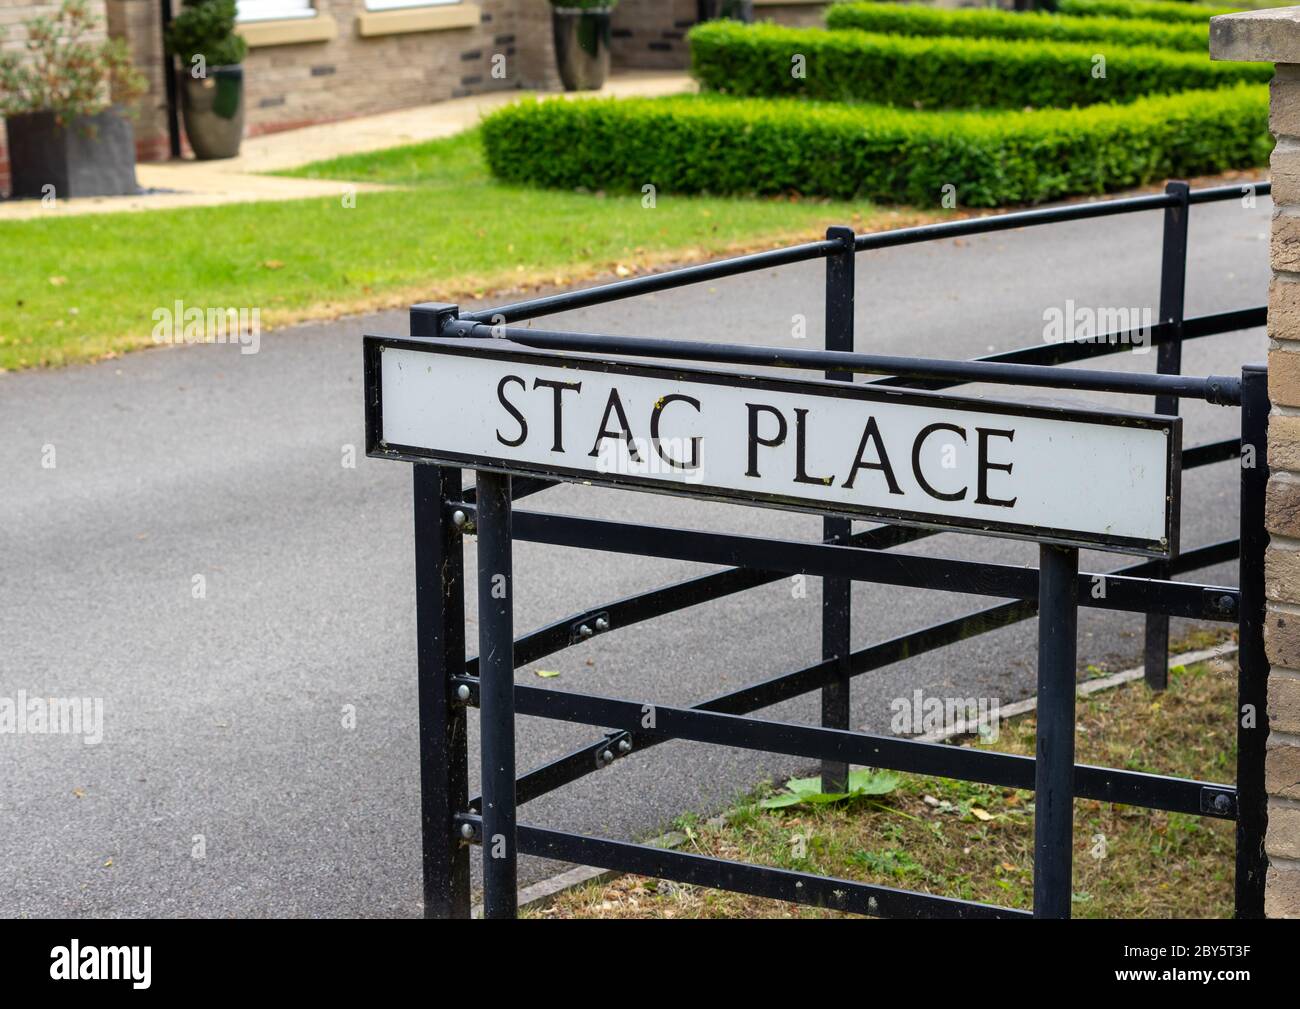 Un cartello stradale britannico per una strada chiamata Stag Place montato su pali, nero con sfondo bianco Foto Stock